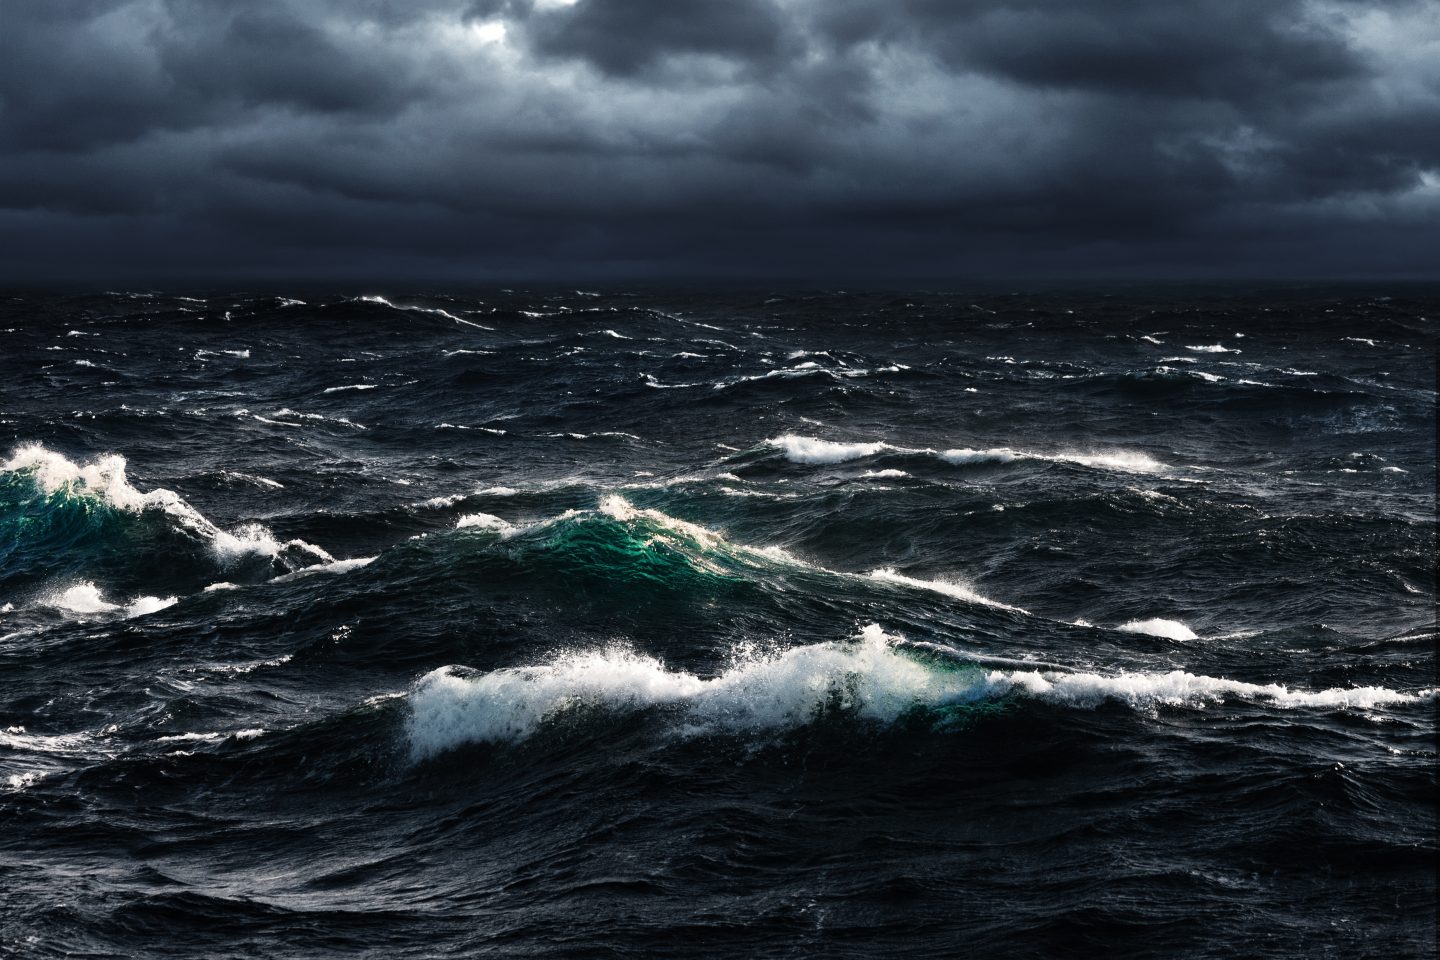 انهيار تيار مائي في المحيط الأطلسي سيؤدي إلى تغيرات مناخية قاسية حول العالم